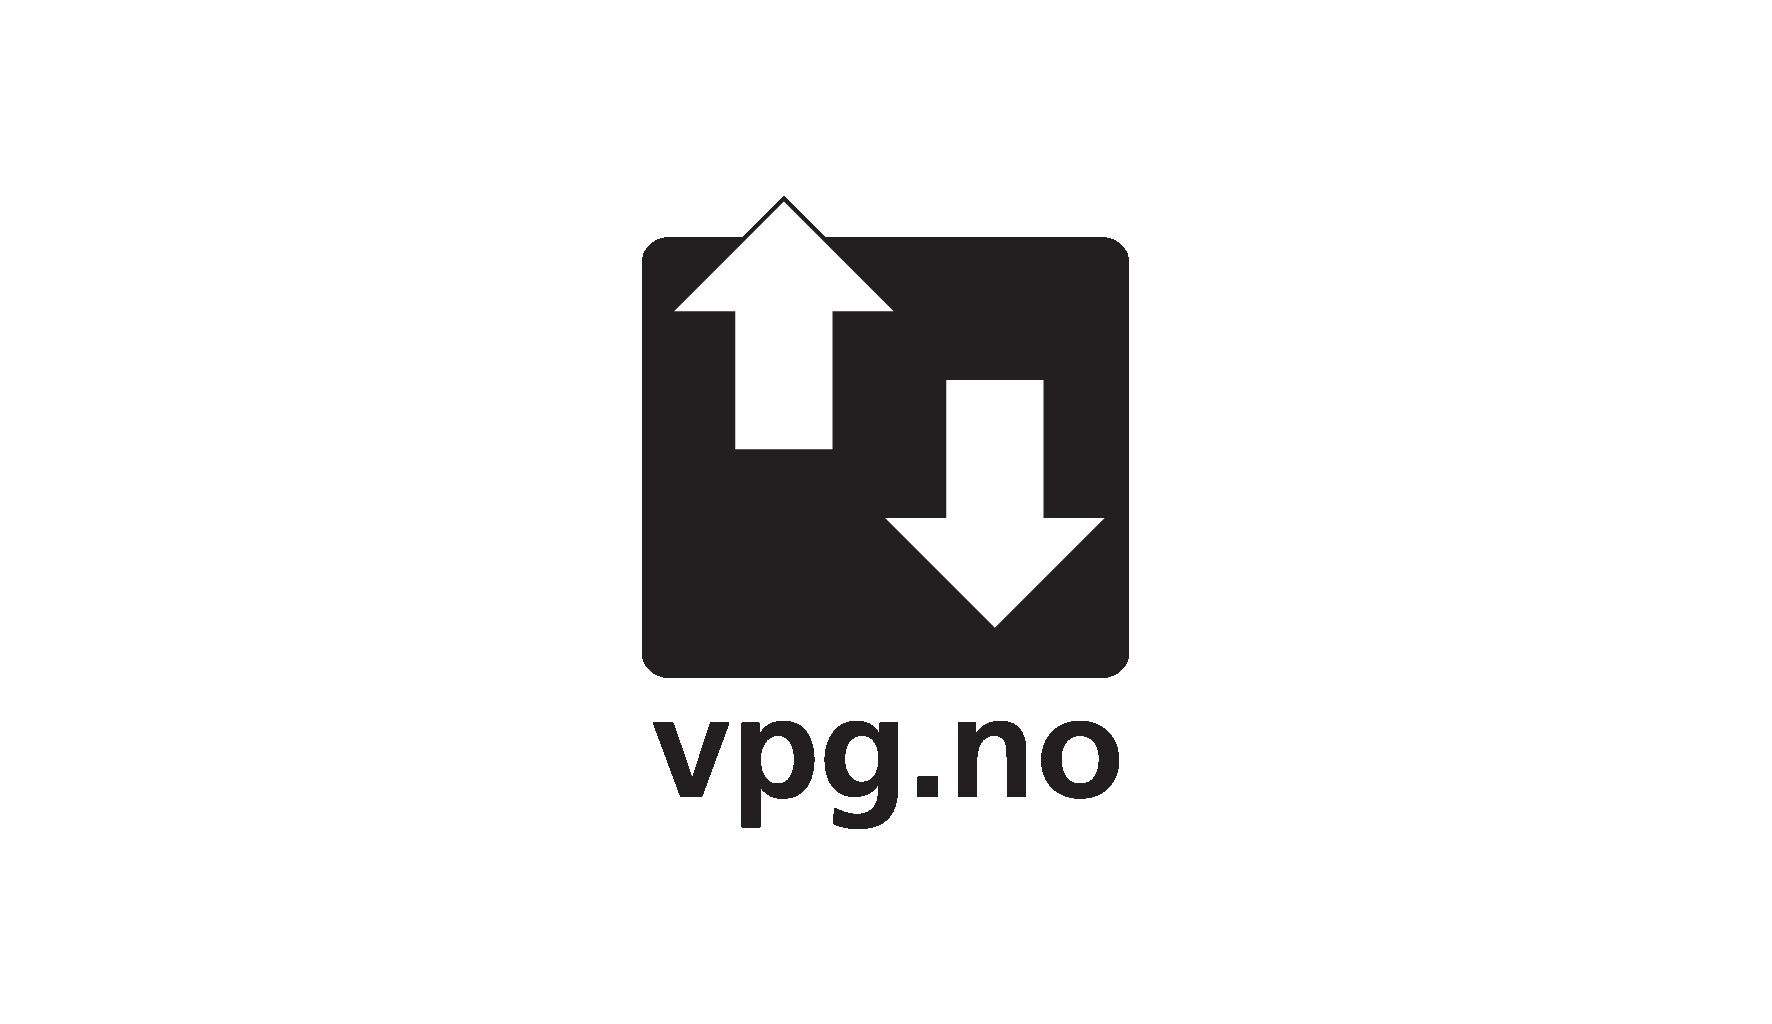 VPG Logo - Ice Bears and Islands » Vertical Play Ground (VPG) Norway Confirmed ...